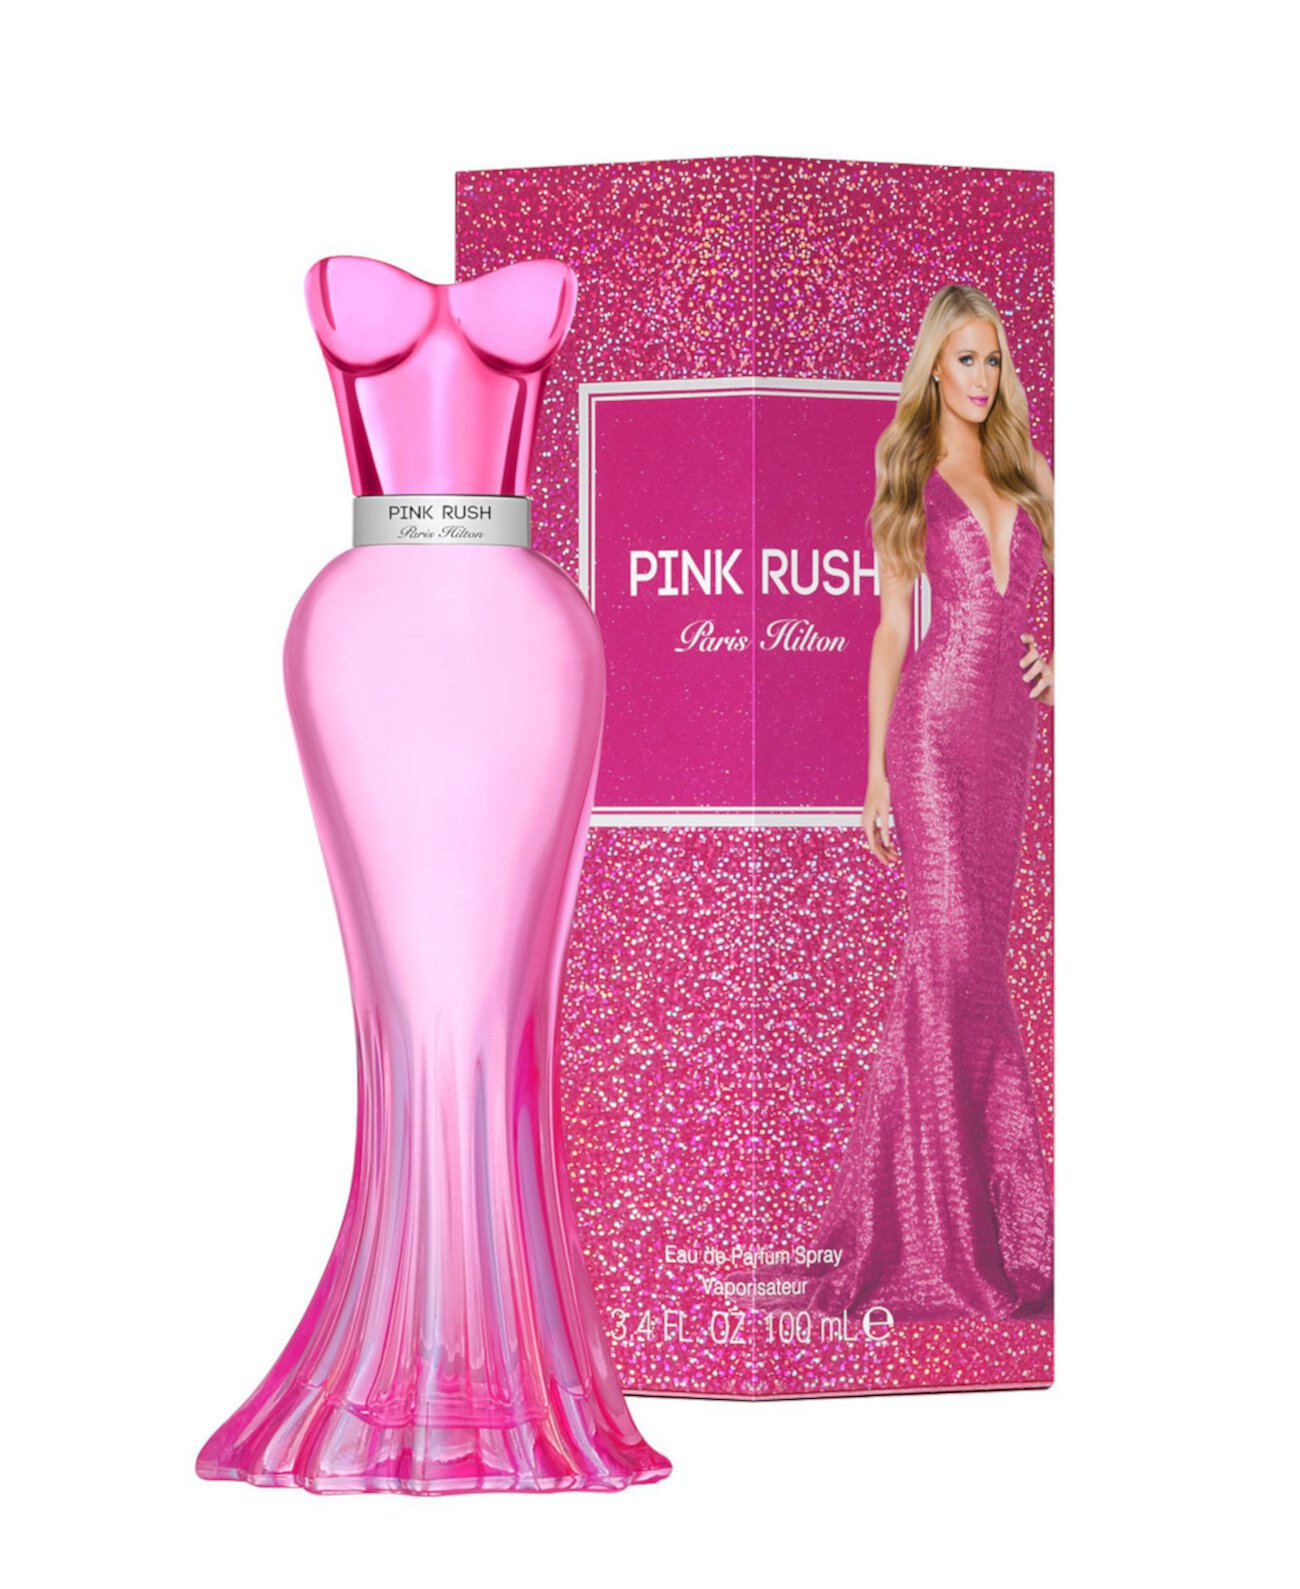 Женская парфюмерная вода Pink Rush Eau De Parfum, 3,4 эт. Унция Paris Hilton